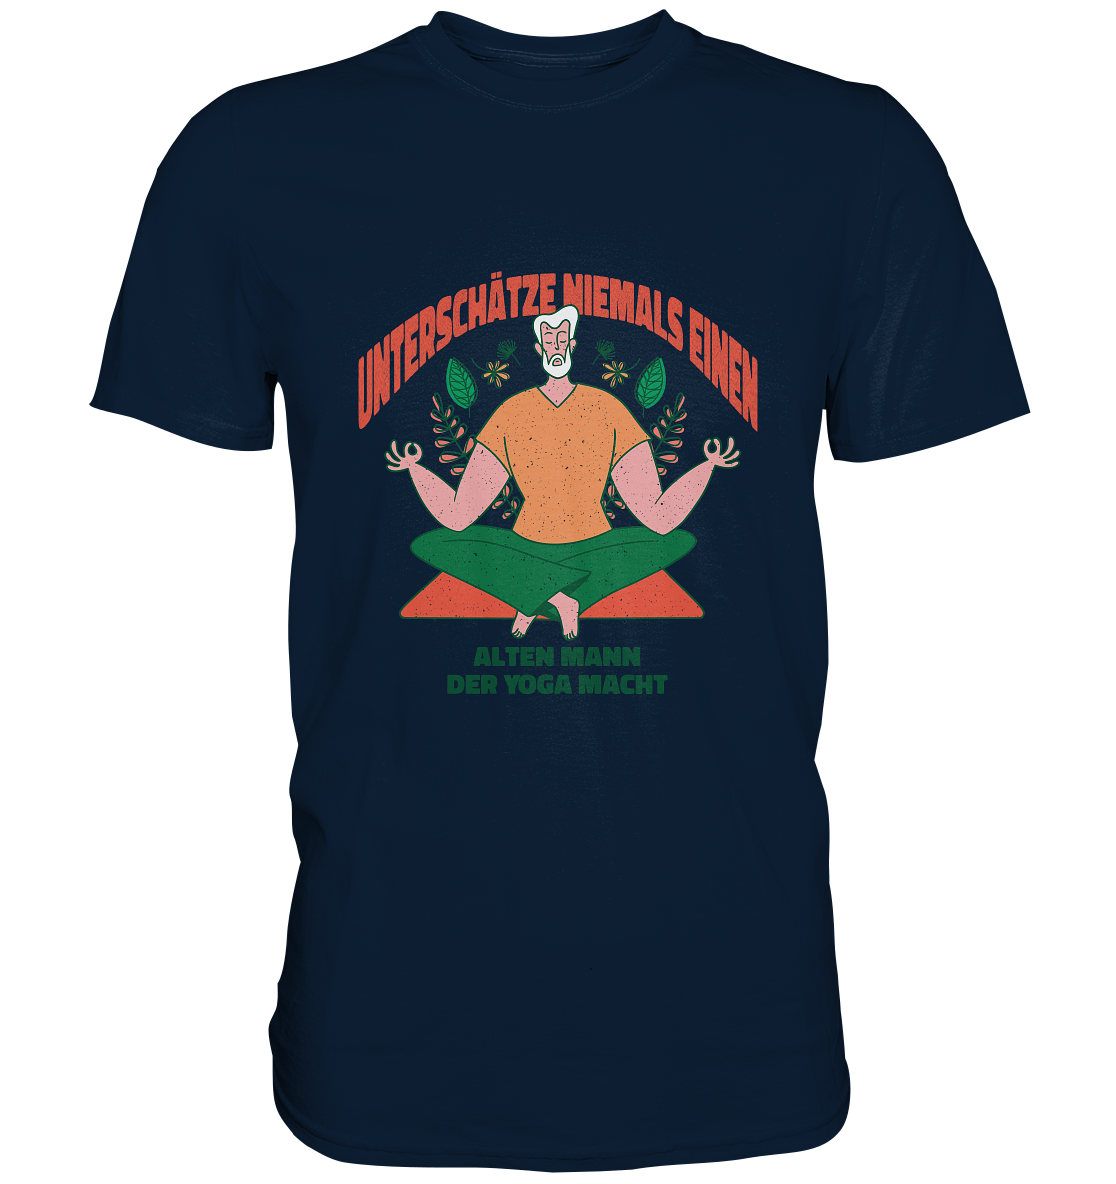 Unterschätze niemals einen alten Mann Yoga - Premium Shirt - Online Kaufhaus München